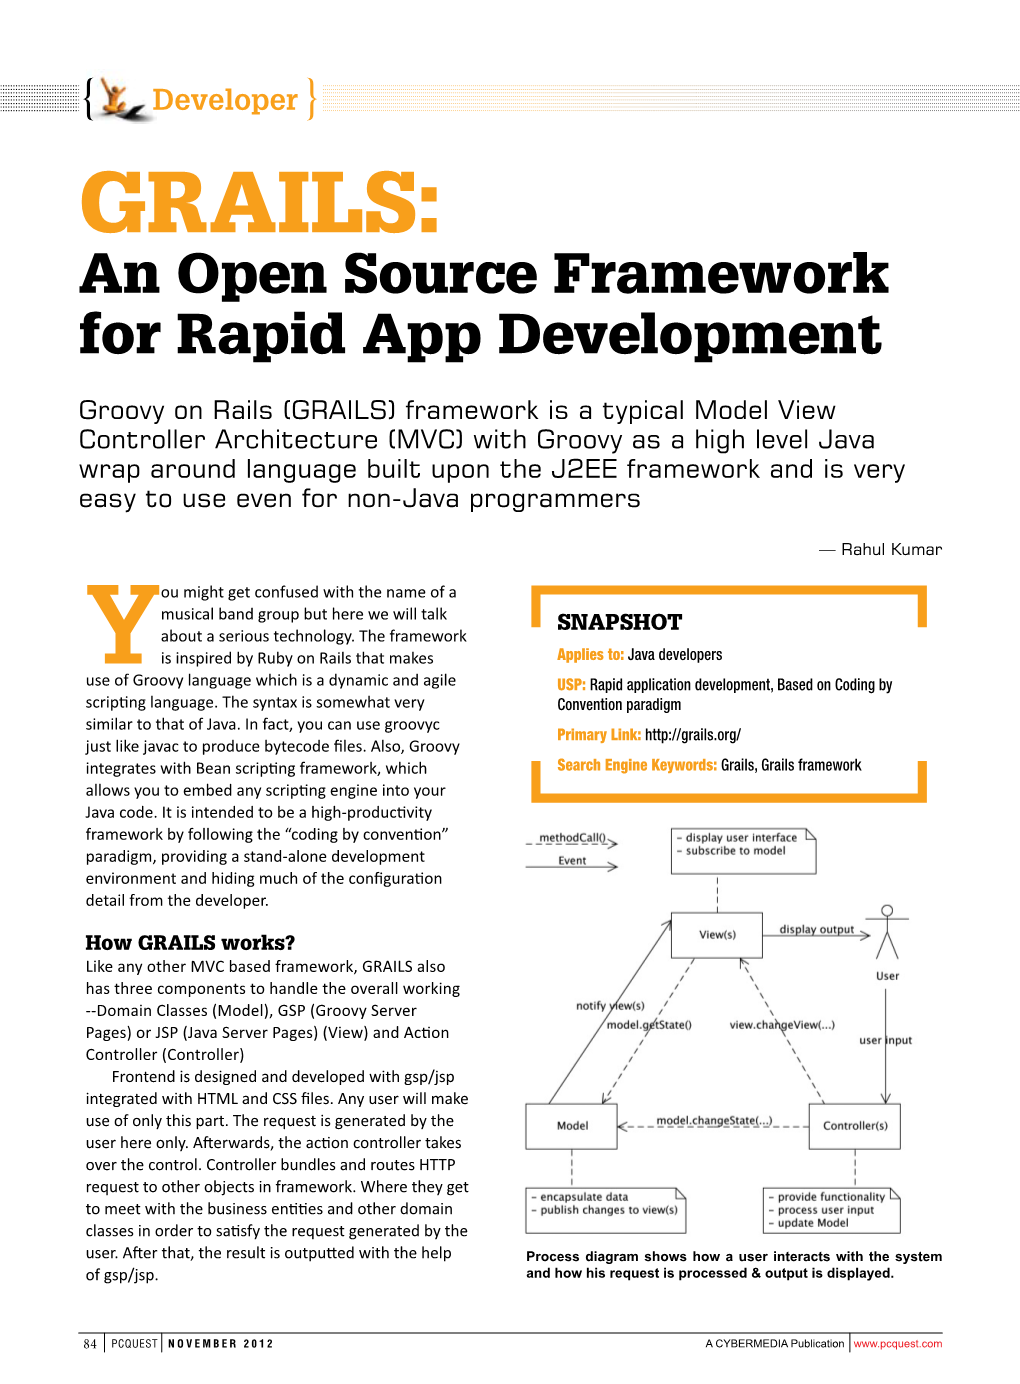 GRAILS : an Open Source Framework for Rapid App Development